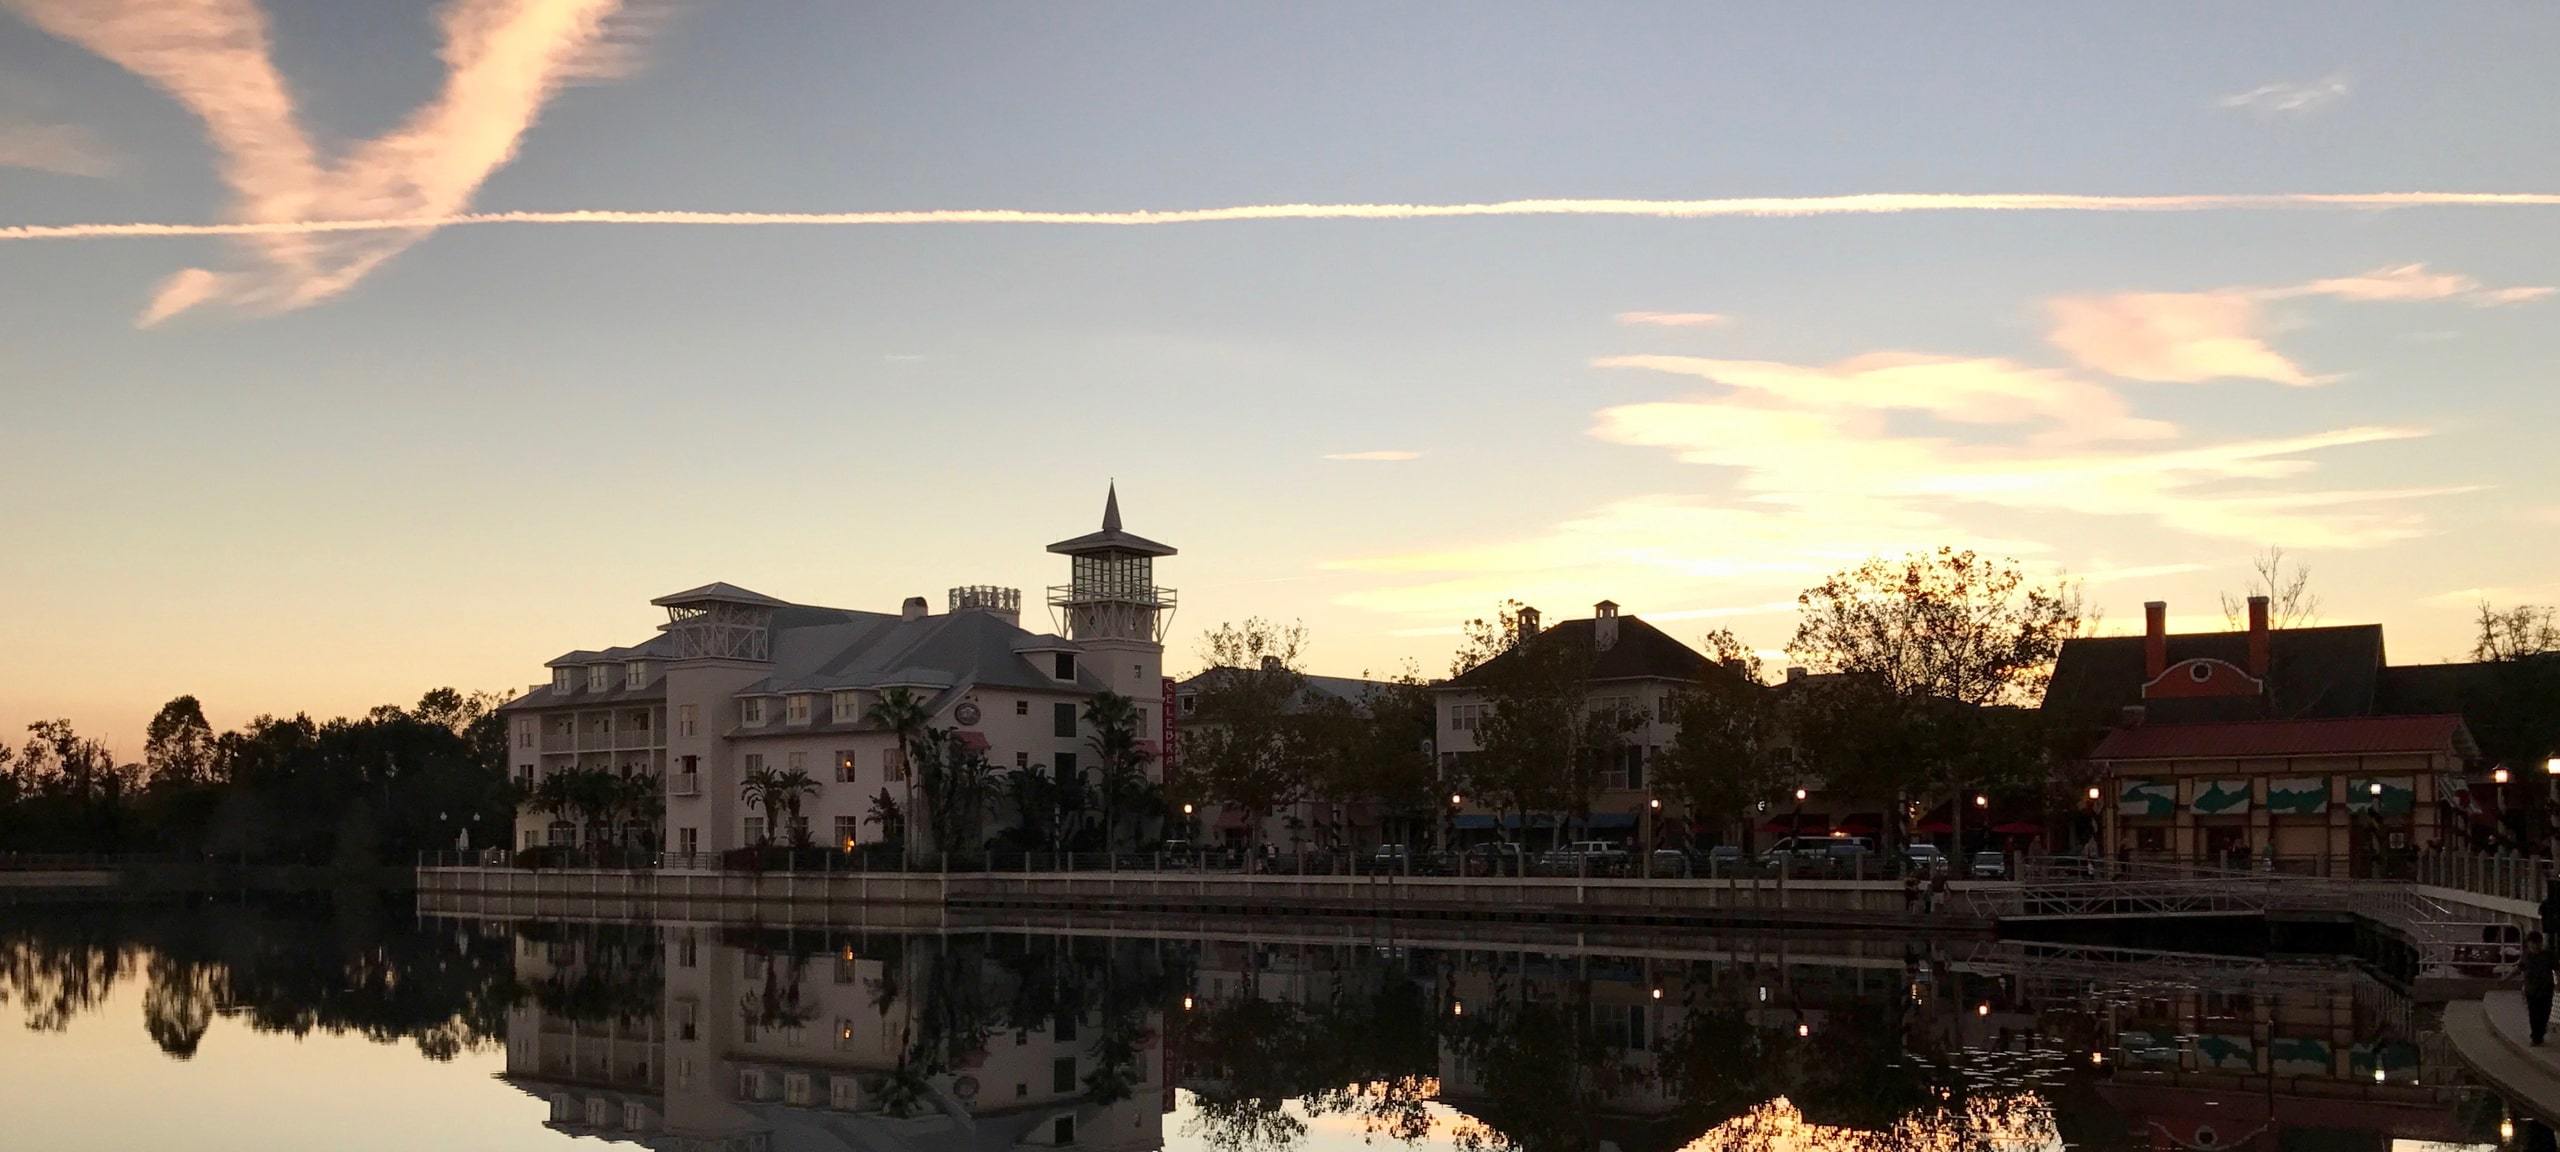 Sunset at Celebration, Orlando waterfront